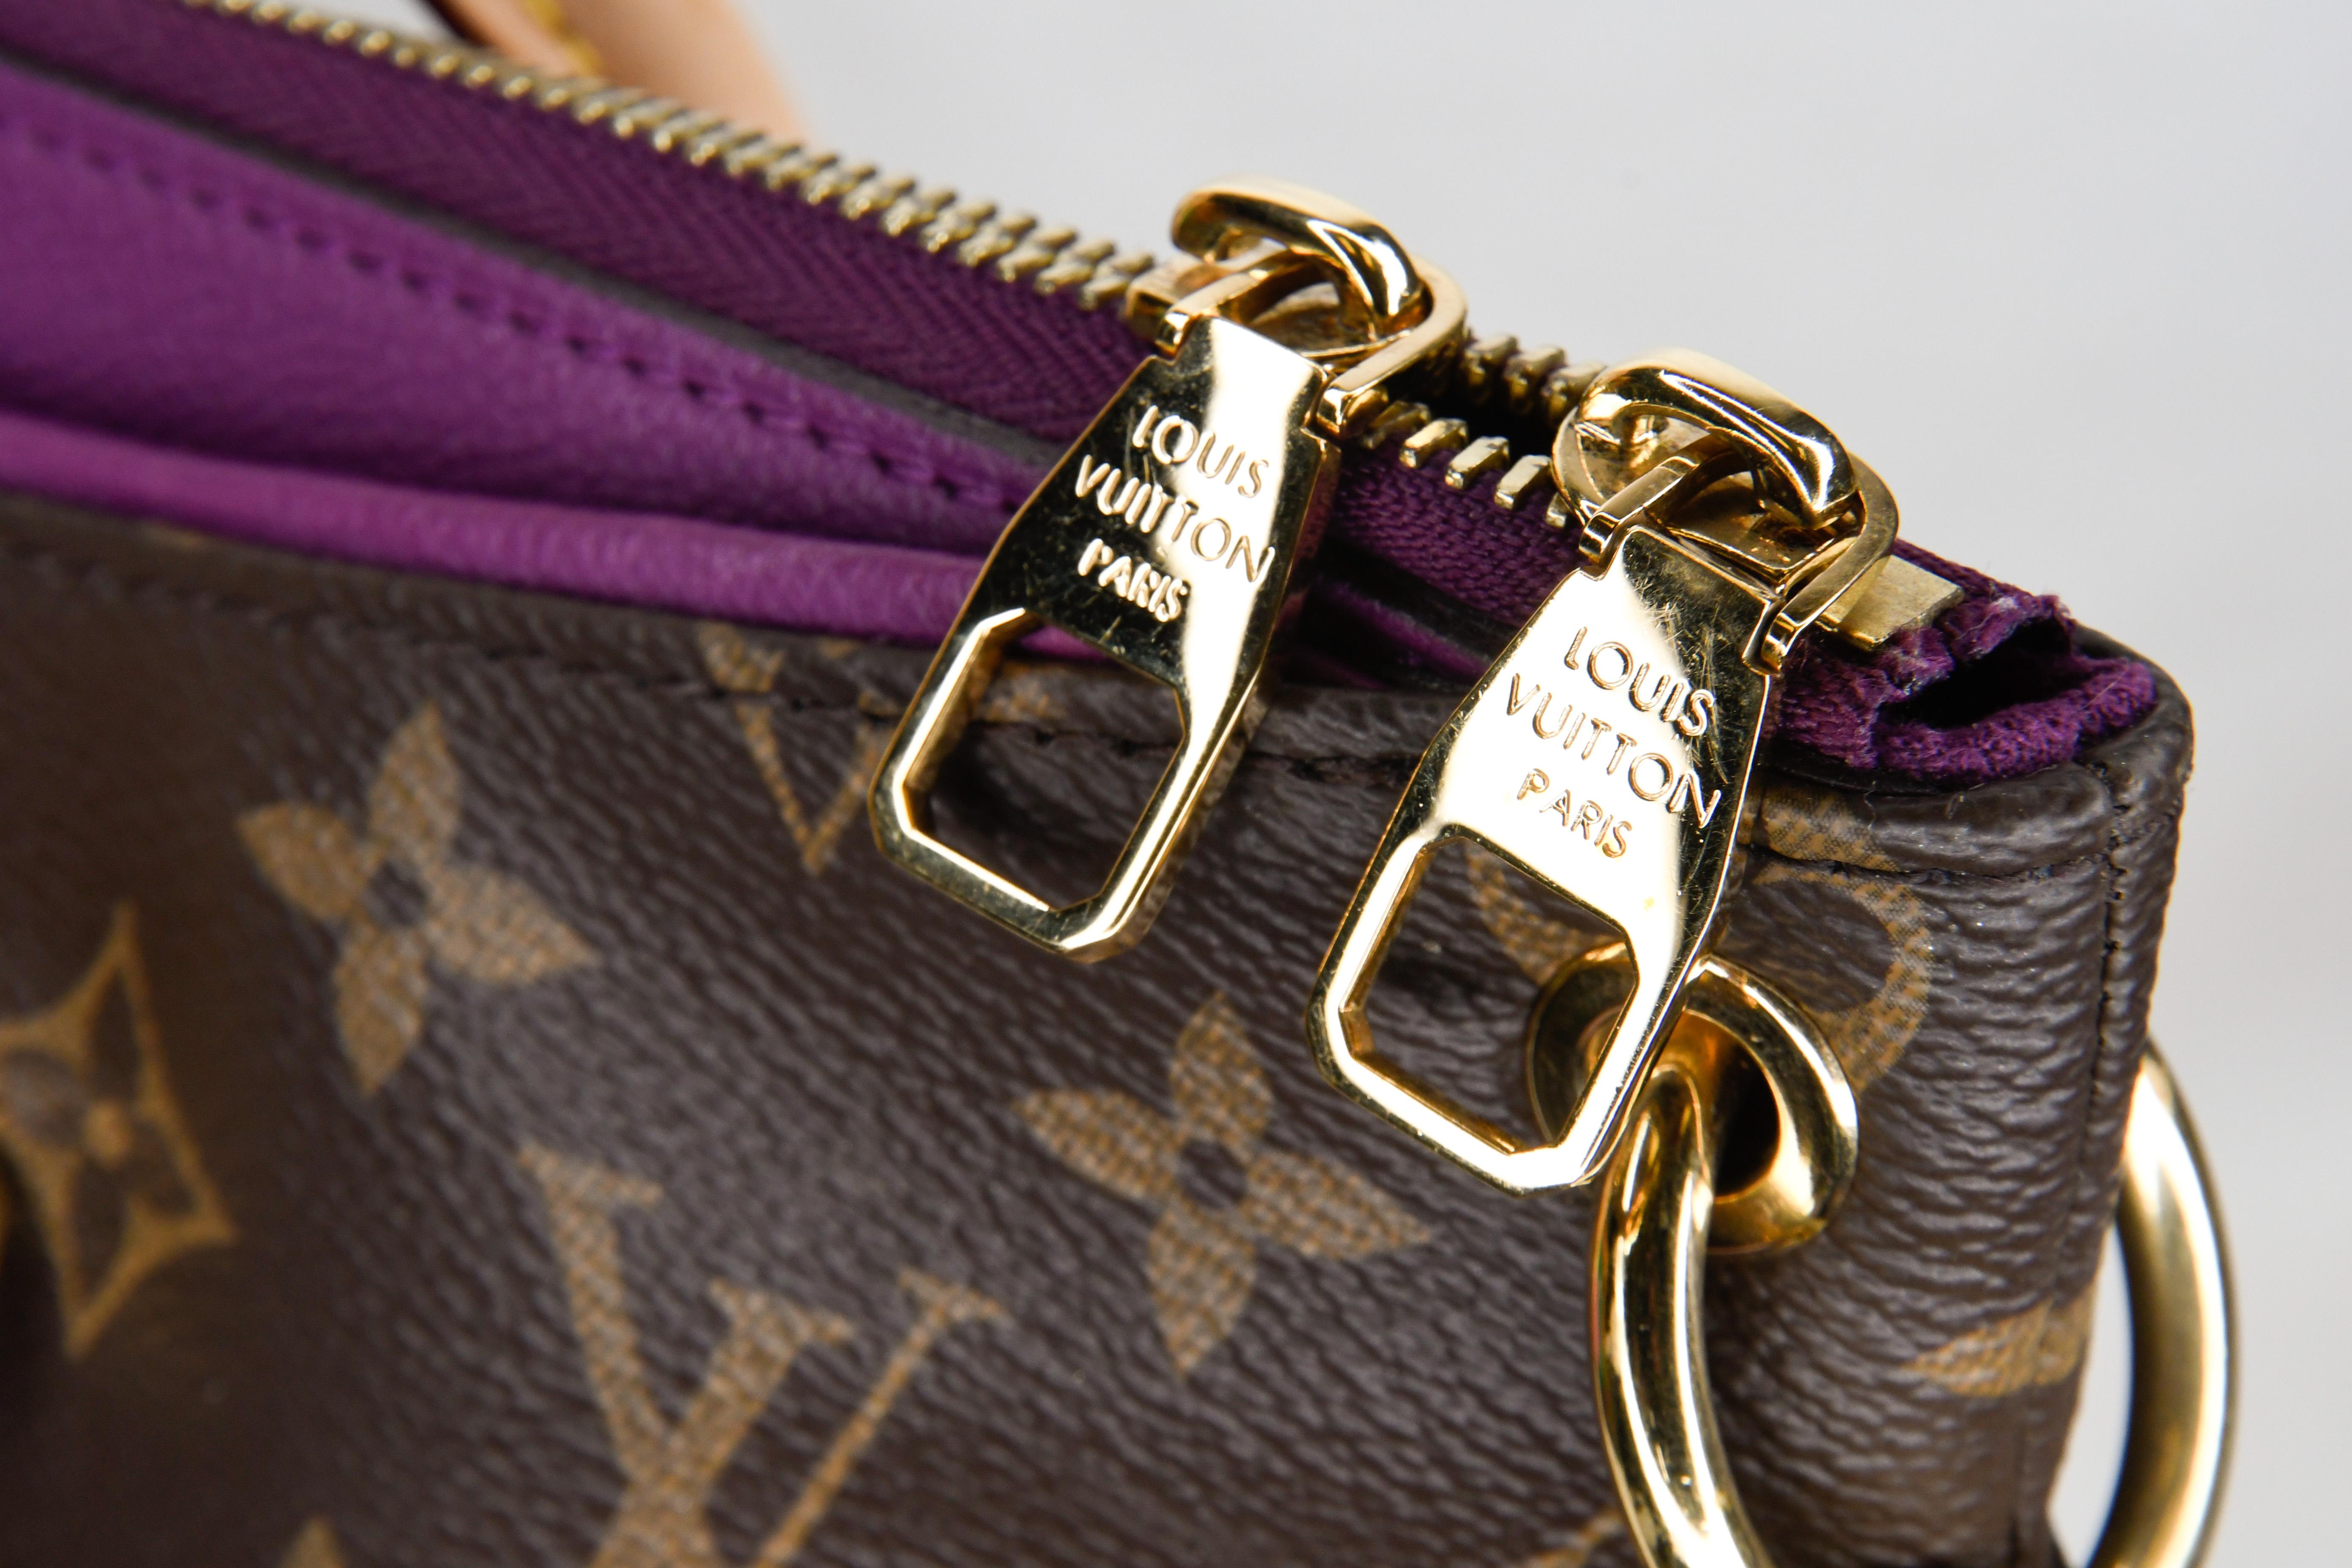 Black Louis Vuitton Amethyste Monogram Pallas Convertible Shoulder or Handbag